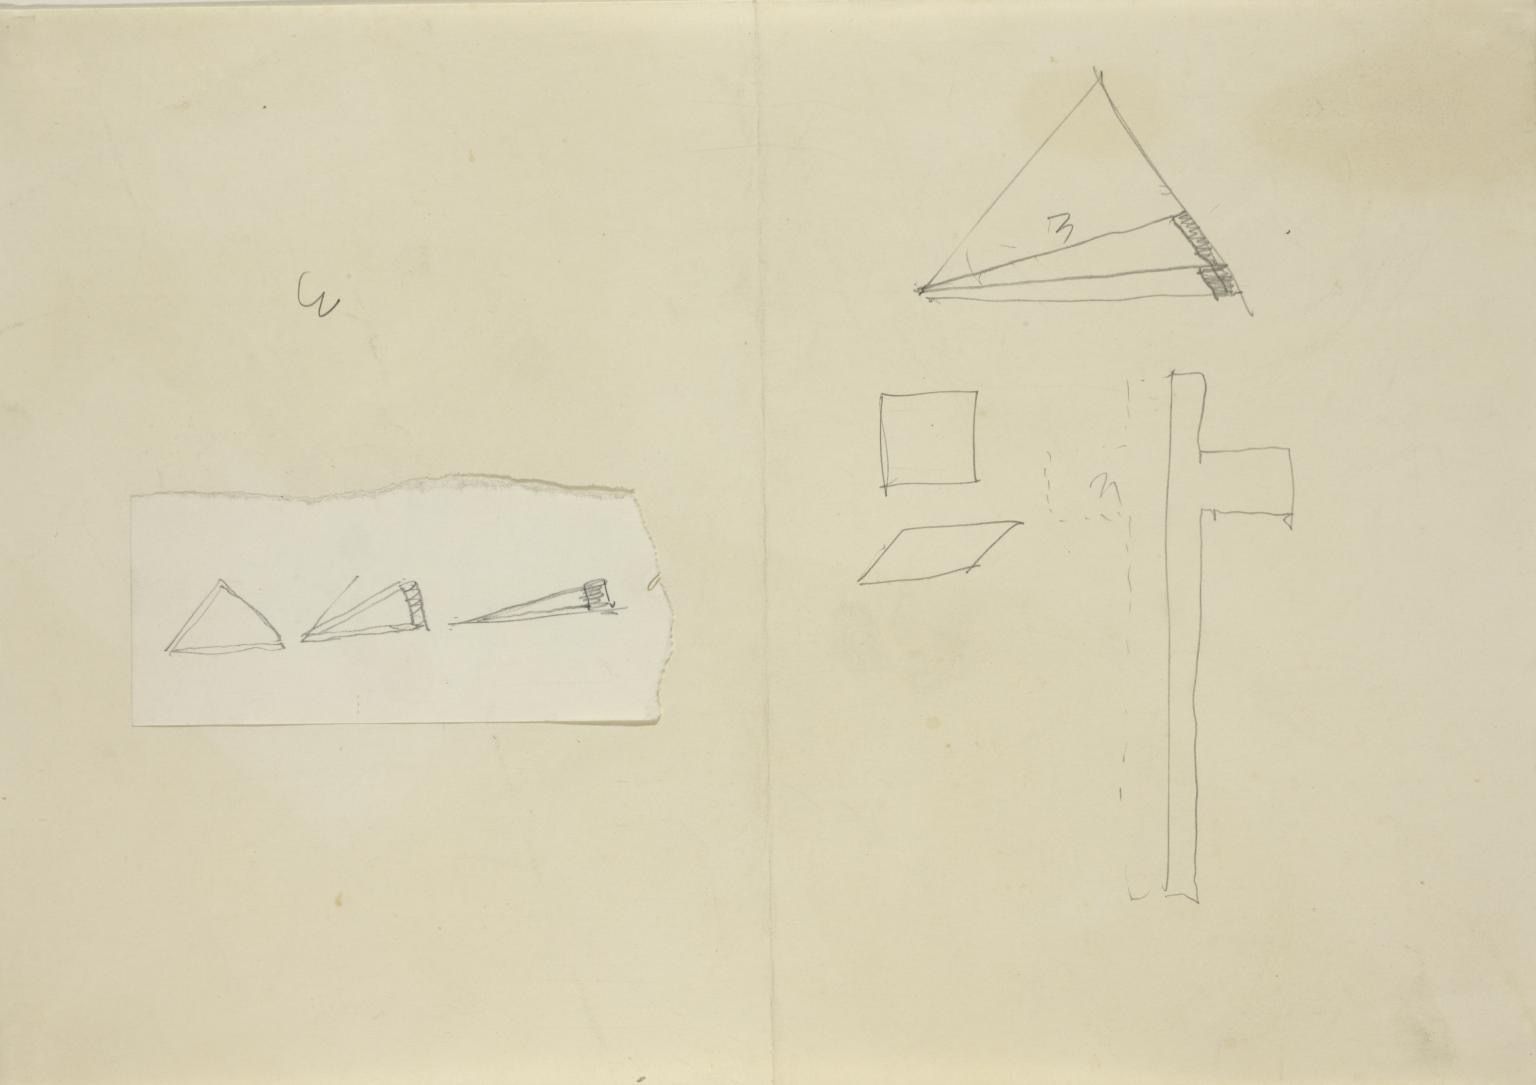 Joseph Beuys, Score for Manresa